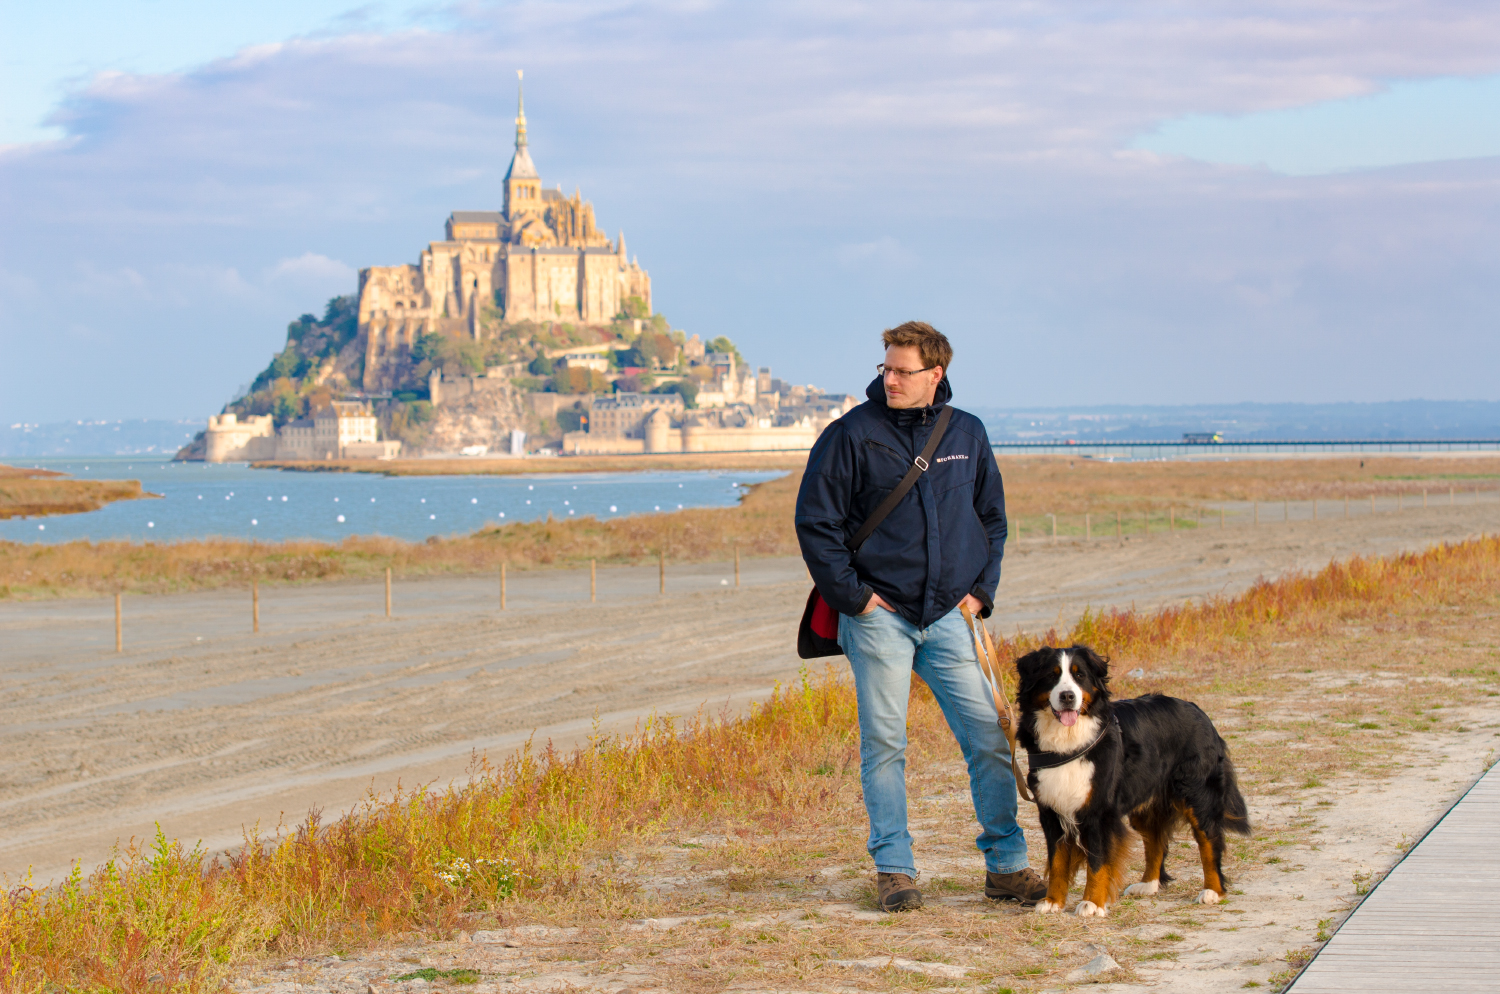 Klosterfelsen mit Panorama-Qualitäten: Schon von weitem ist Le Mont-Saint-Michel ein imposanter Anblick.